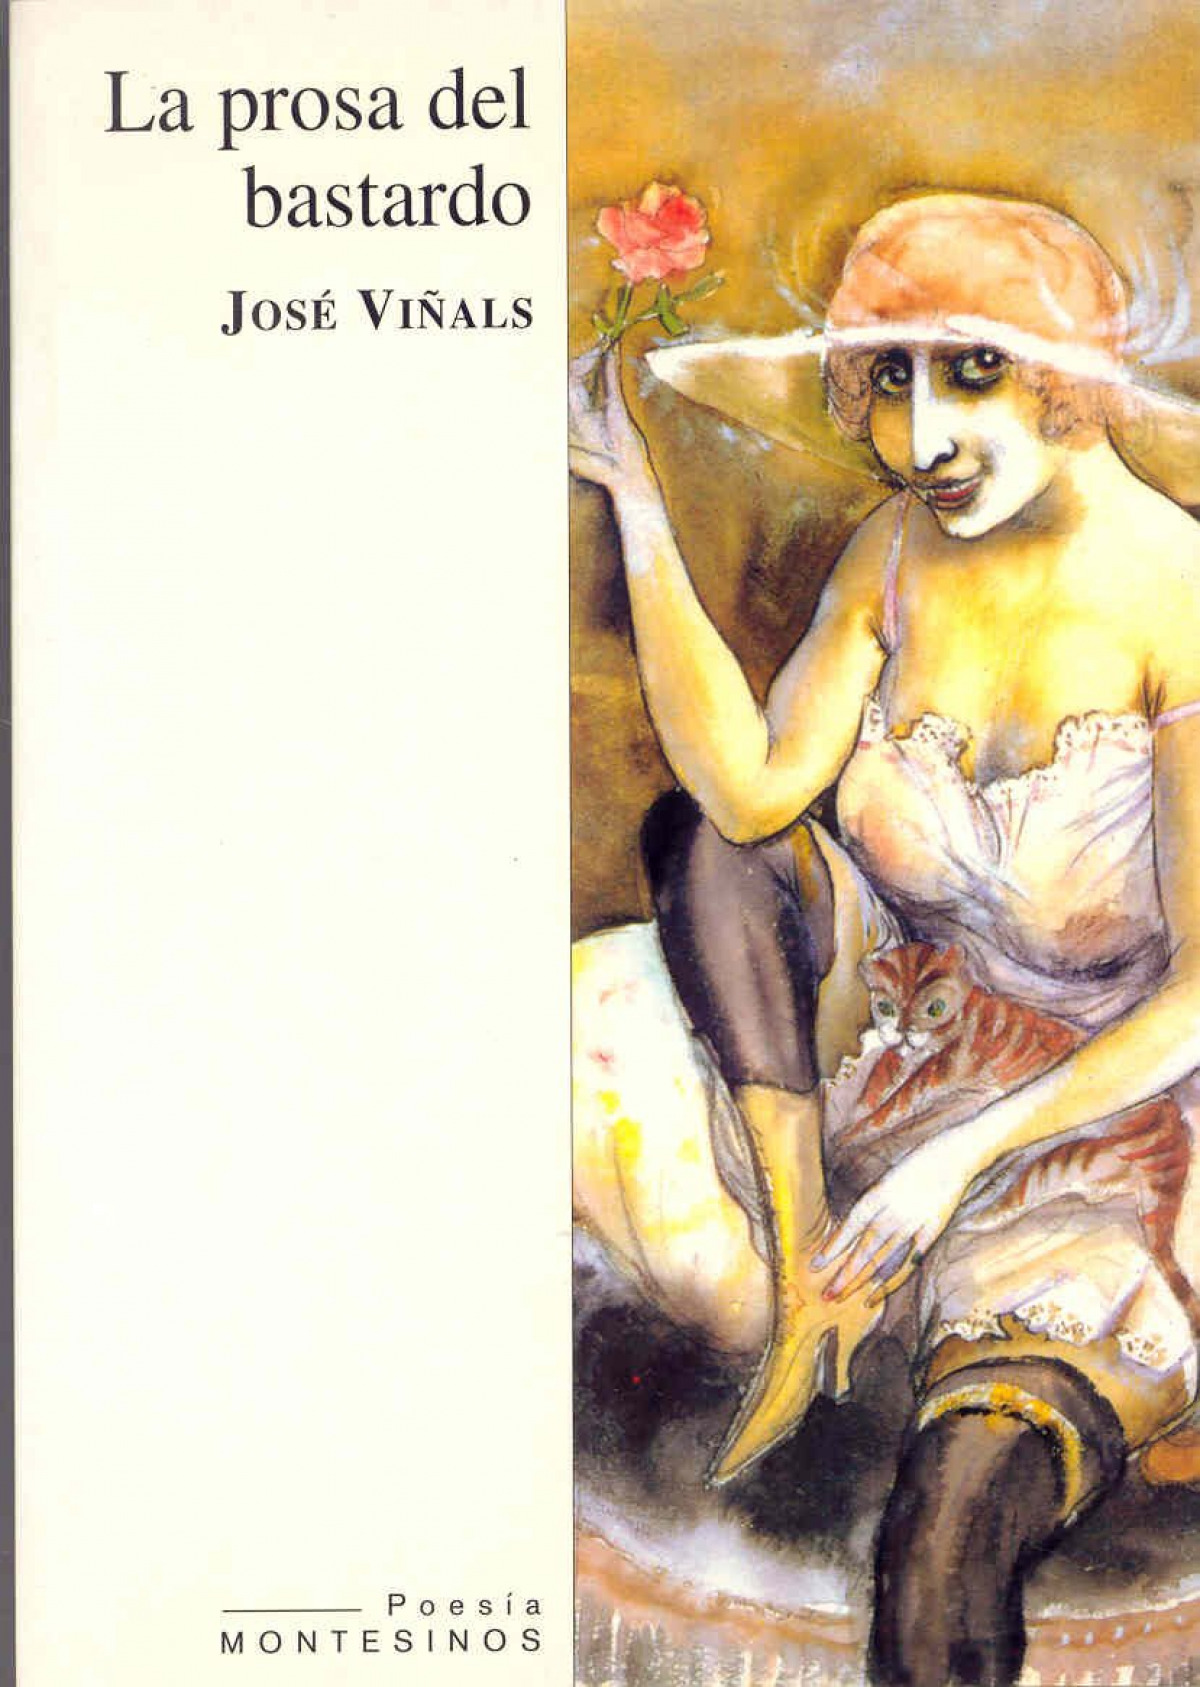 La prosa del bastardo - ViÑals, Jose